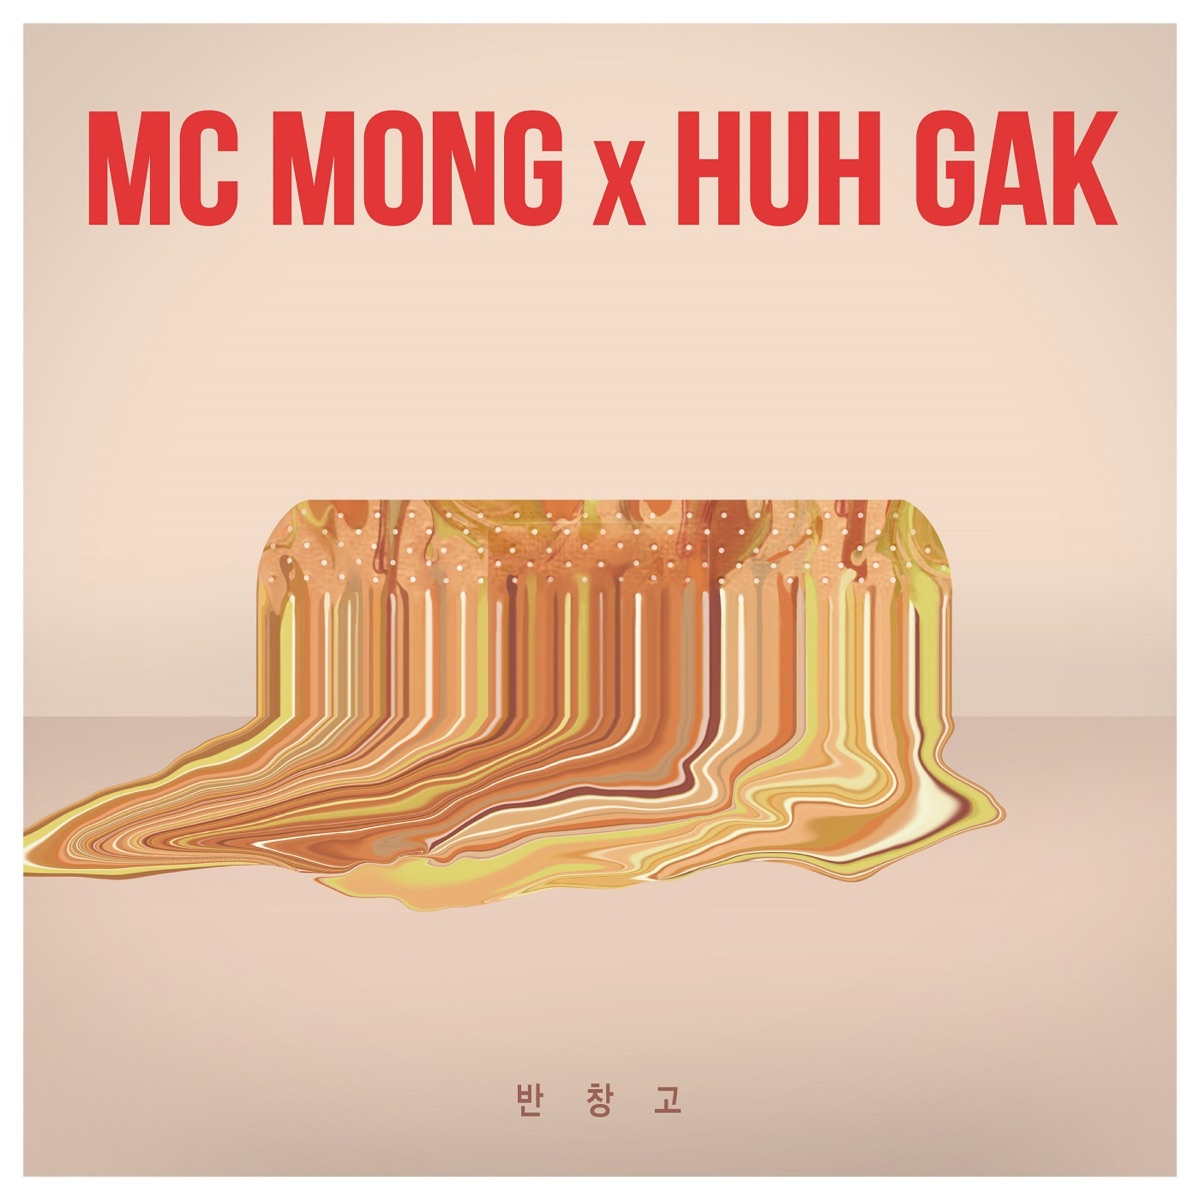 MC MONG, HUH GAK – Band-Aid – Single